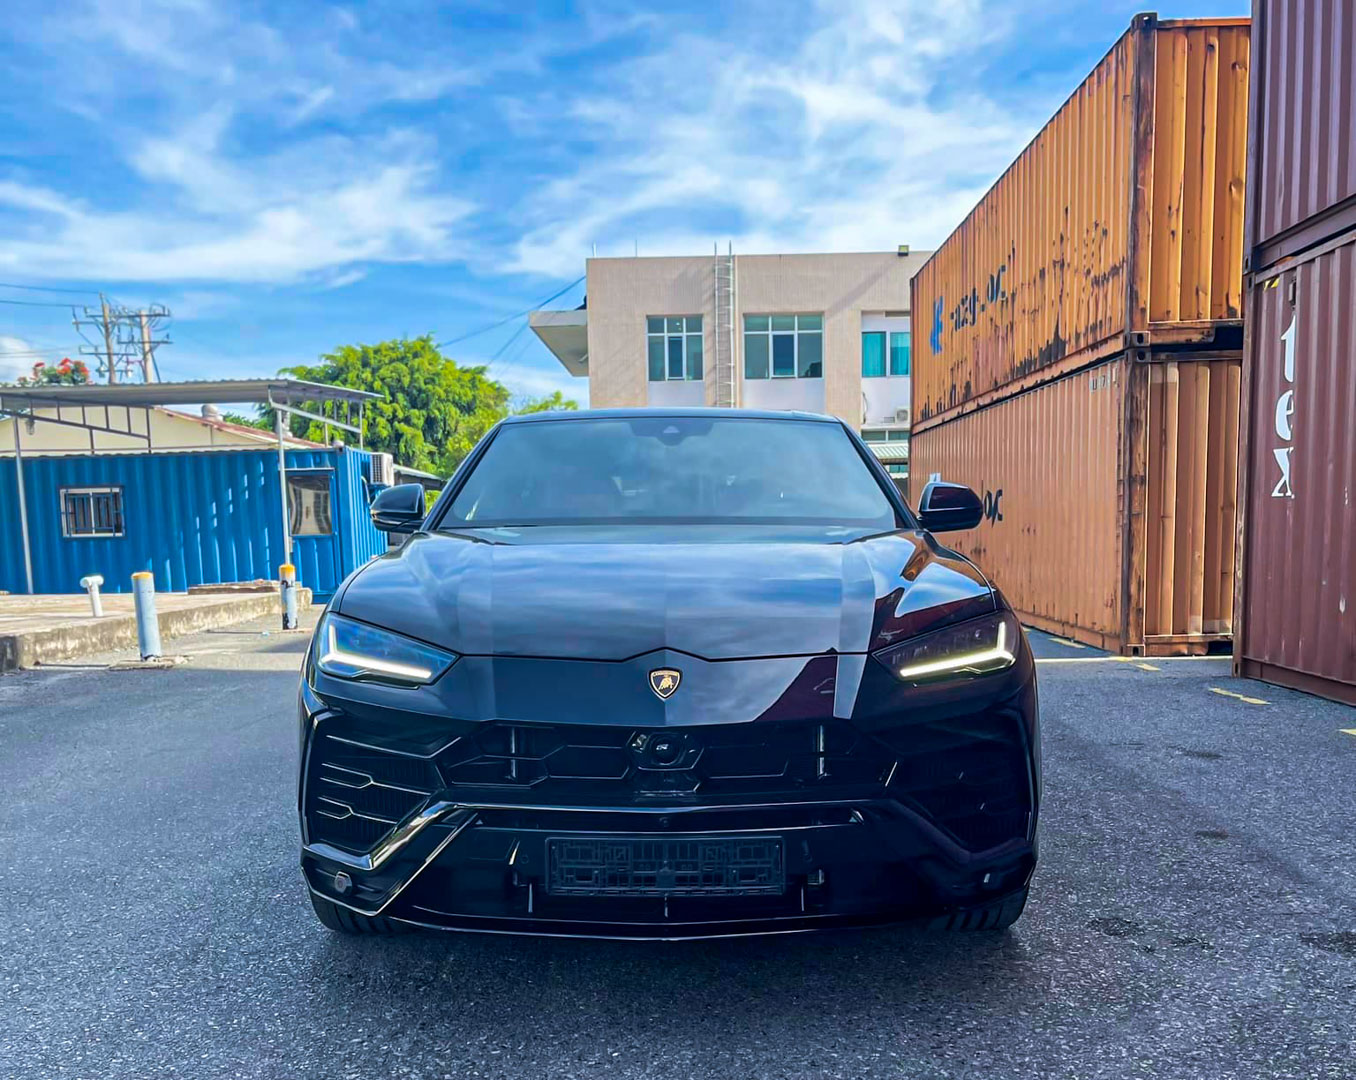 CP-Lamborghini Urus mới về Việt Nam17.jpg